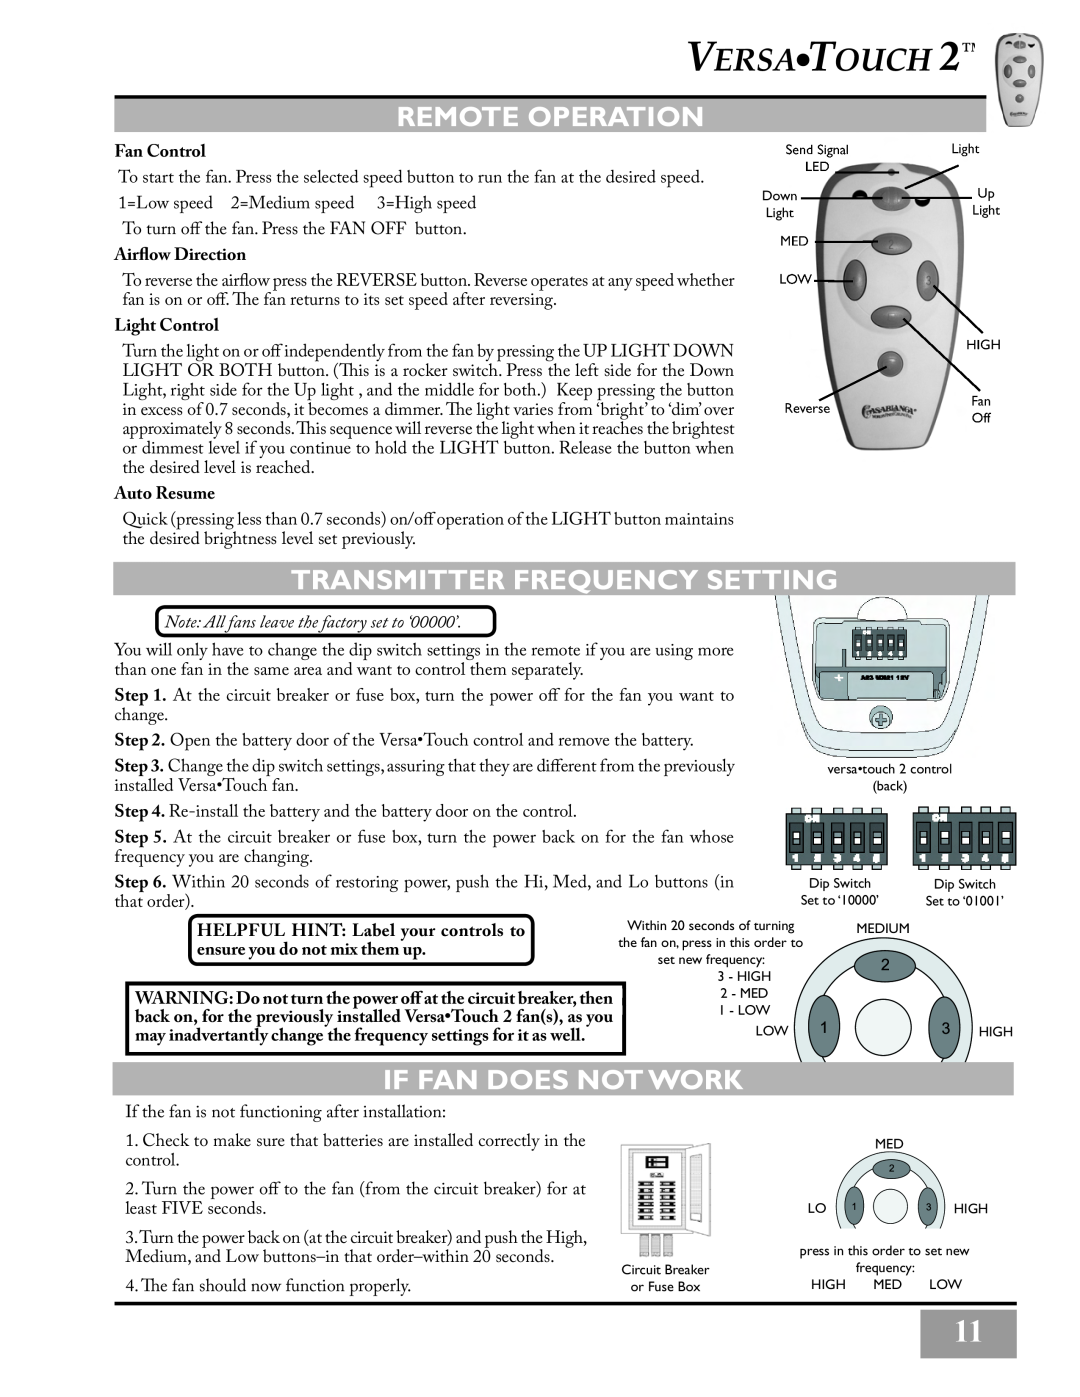 Casablanca Fan Company C3U72M Remote Operation, Transmitter Frequency Setting, If Fan Does Not Work, Fan Control 